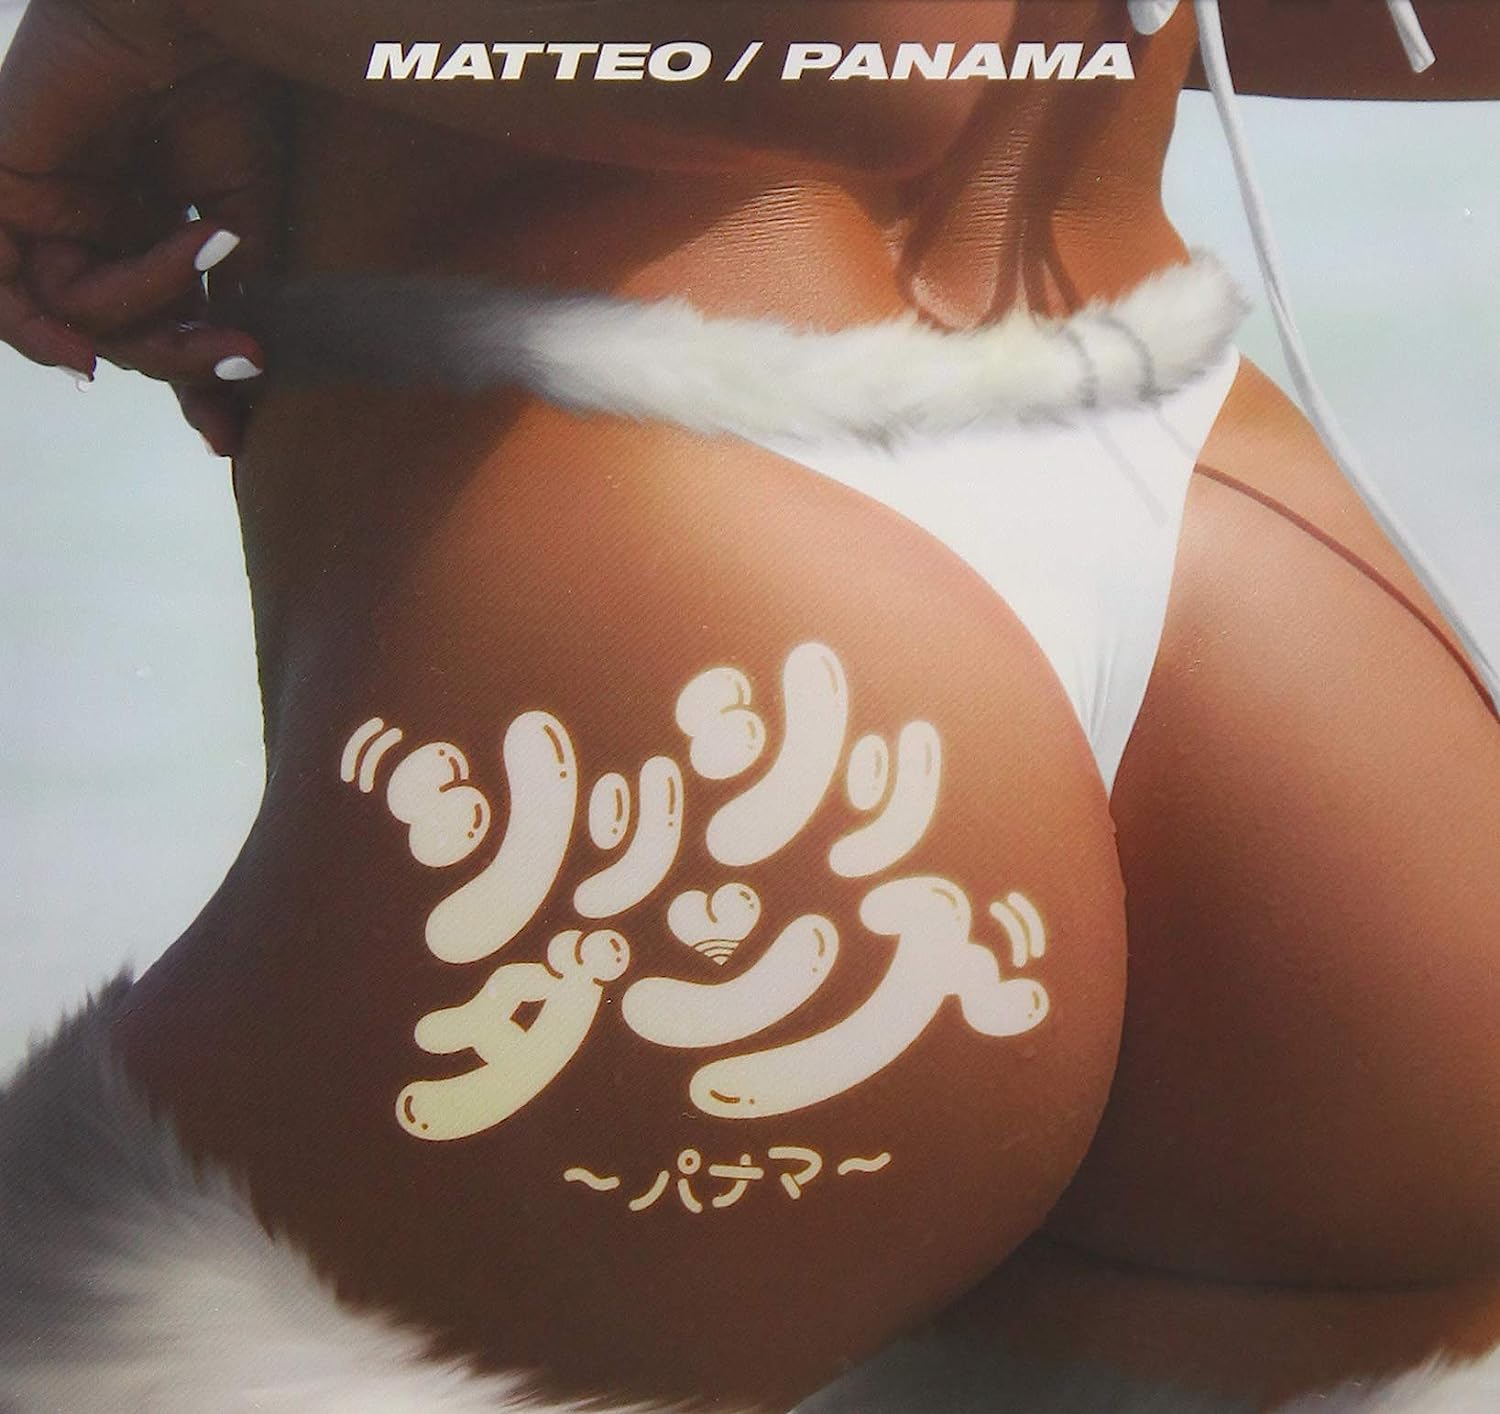  CD マッテオ シリシリダンス~パナマ~ 1枚組 特典なし 新品ケース交換 送料無料 UICZ-1703